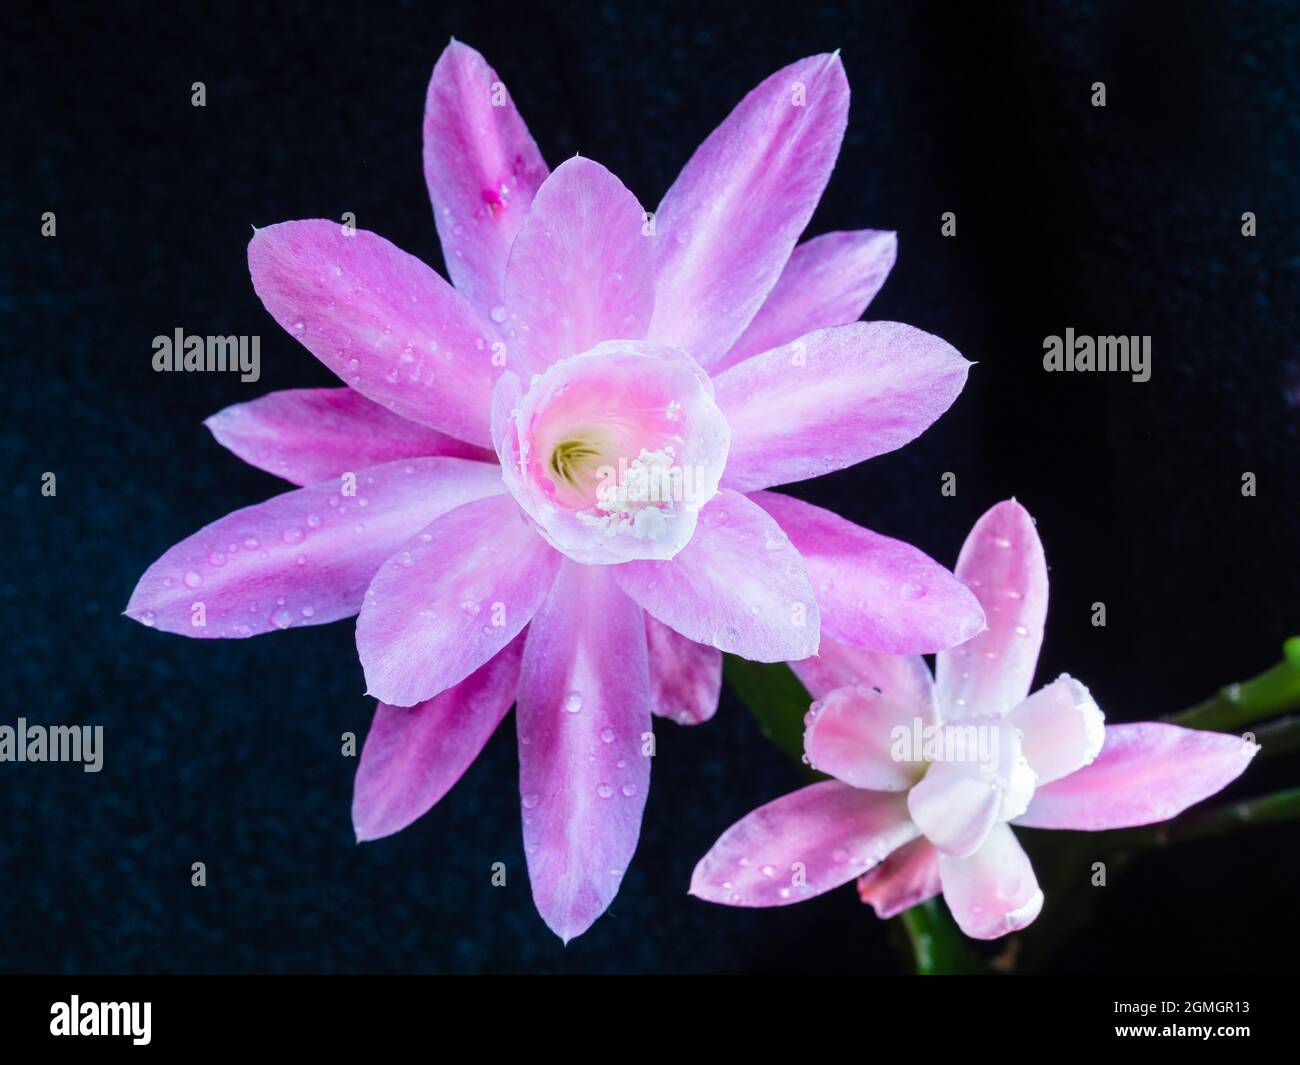 Amazing Blossom of Epiphyllum hybrid Stock Photo